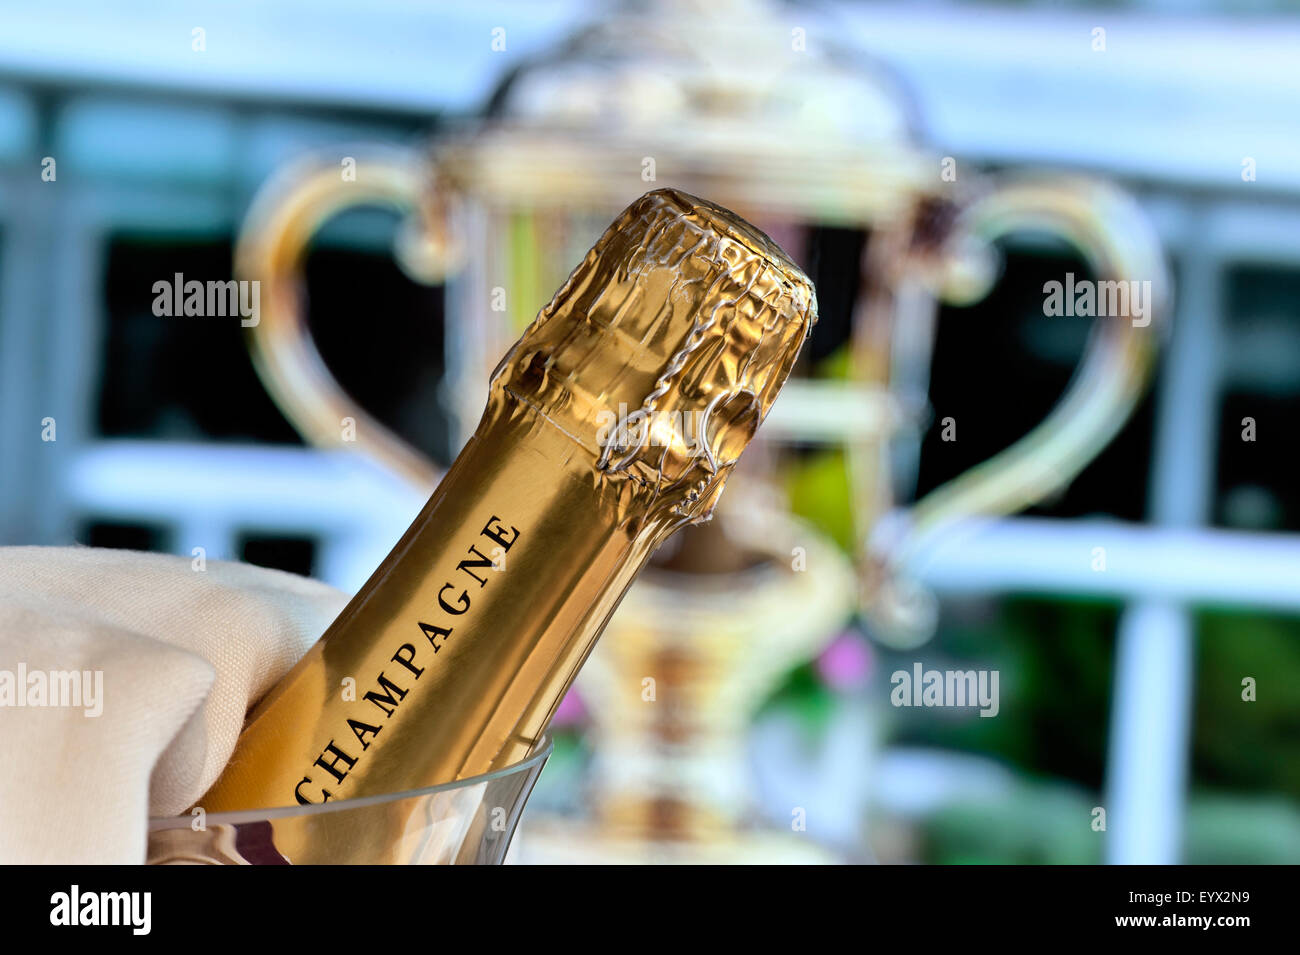 GOLD CUP GEWINNER ASCOT Close view auf Champagner-Flasche im Weinkühler mit Royal Ascot Ladies Day Gold Cup im Hintergrund Ascot Berkshire UK Stockfoto